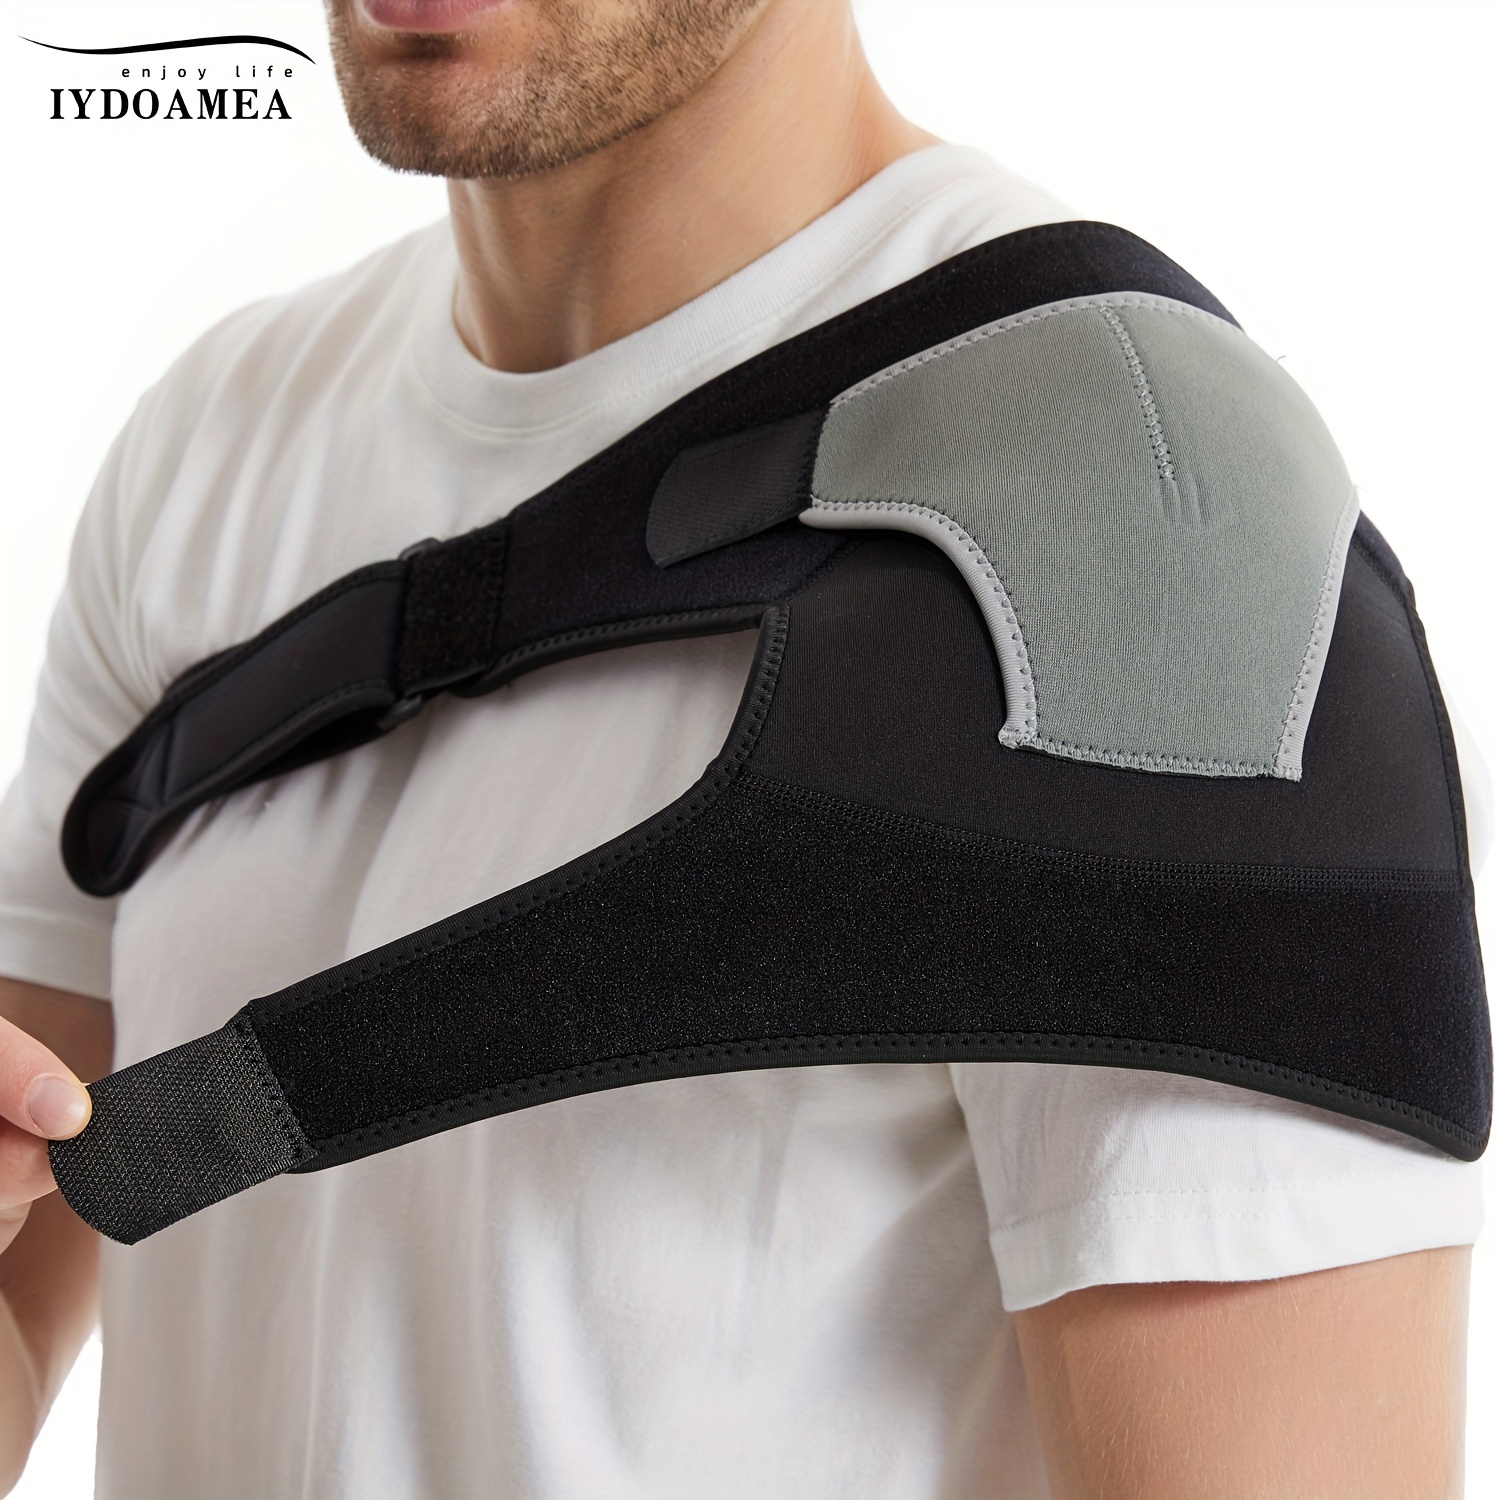 WALFRONT Adjustable Shoulder Support Brace Strap Joint Sport Gym  Compression Bandage Wrap,Adjustable Shoulder Support Brace Strap Joint  Sport Gym